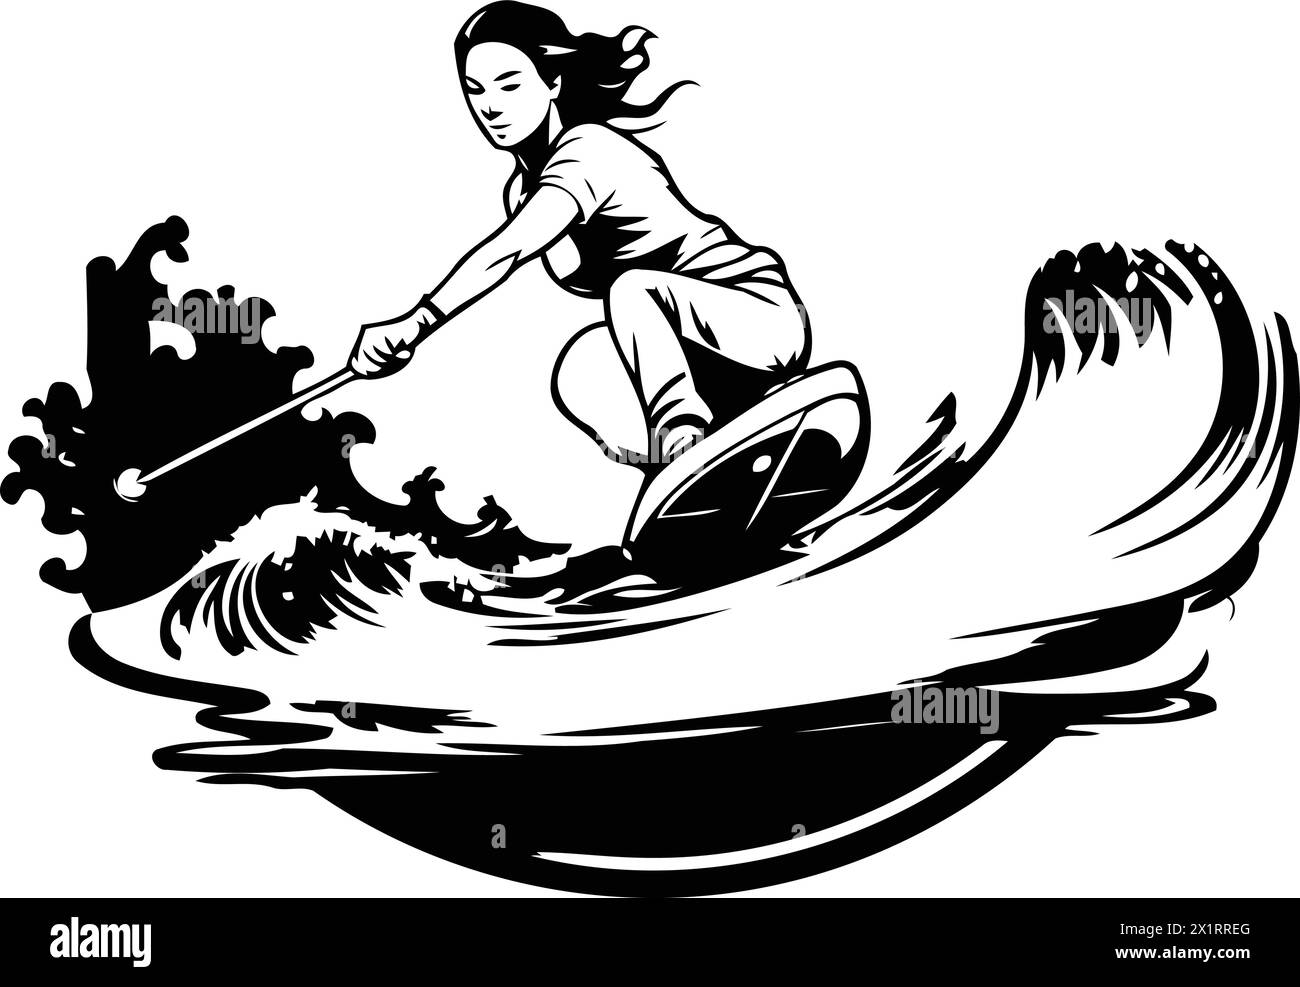 Fille wakeboard sur les vagues. Illustration vectorielle d'une femme chevauchant un wakeboard sur les vagues. Illustration de Vecteur